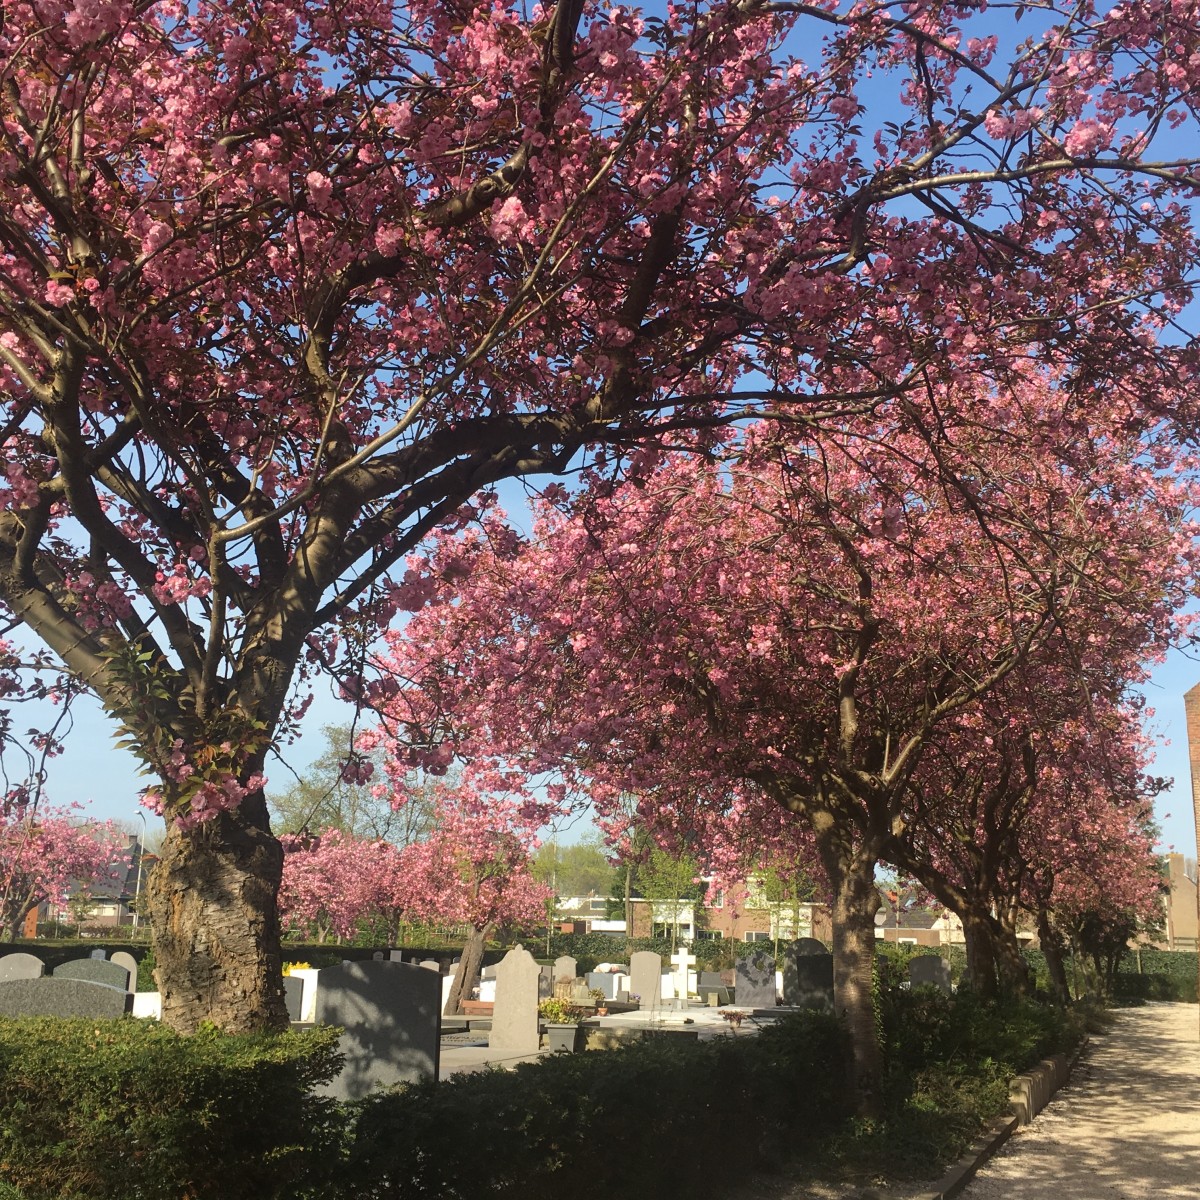 Begraafplaats Kerklaan, bomen in bloei